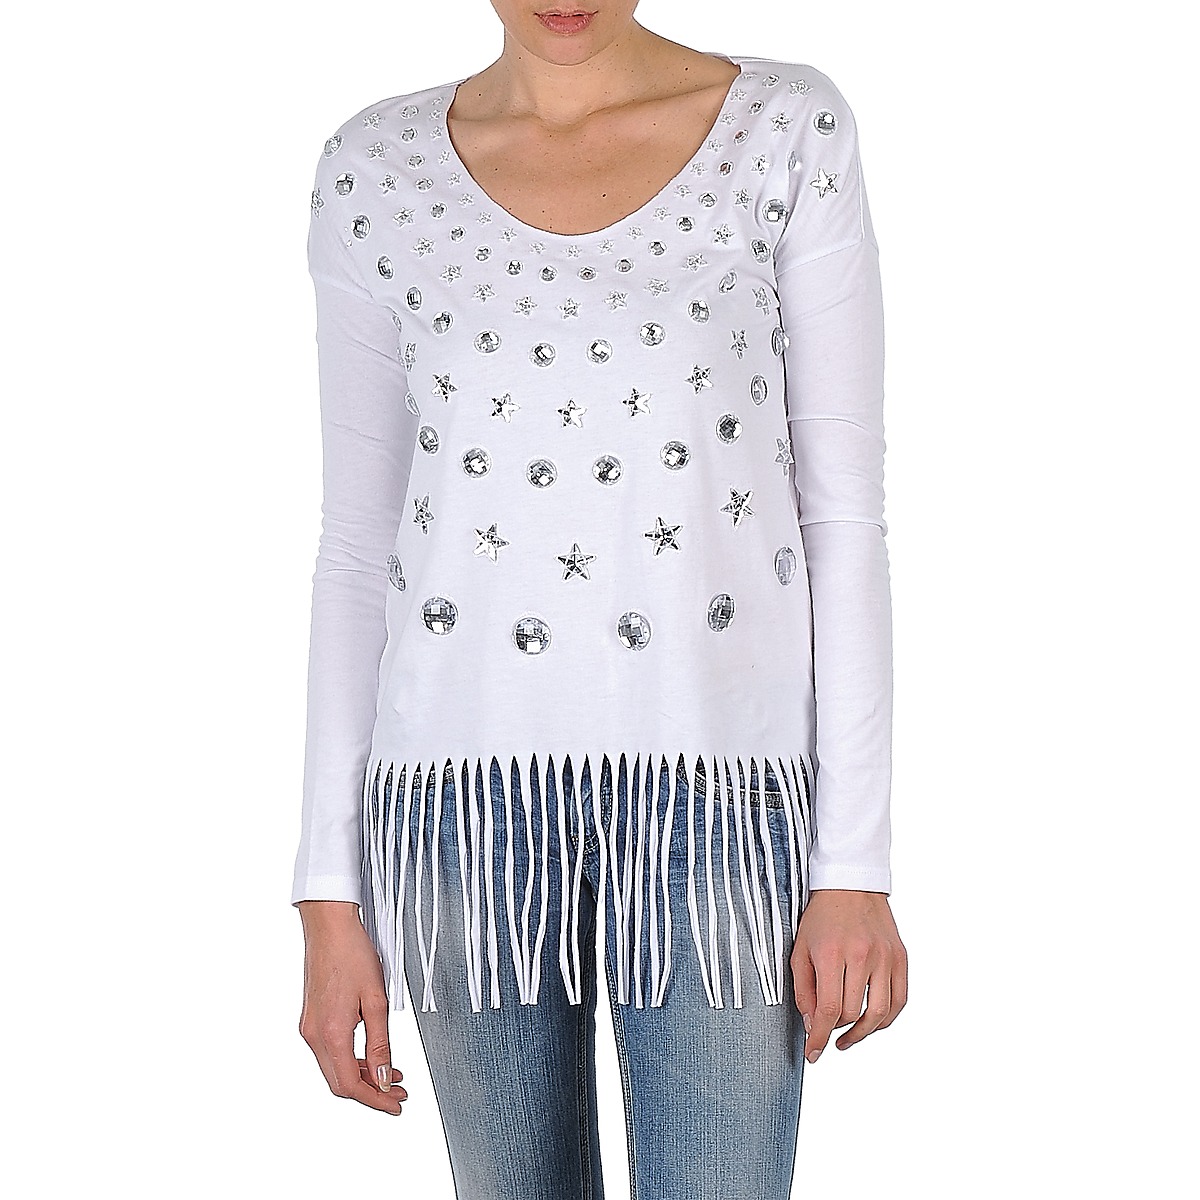 Textil Mulher T-shirt mangas compridas Manoush TUNIQUE LIANE Branco